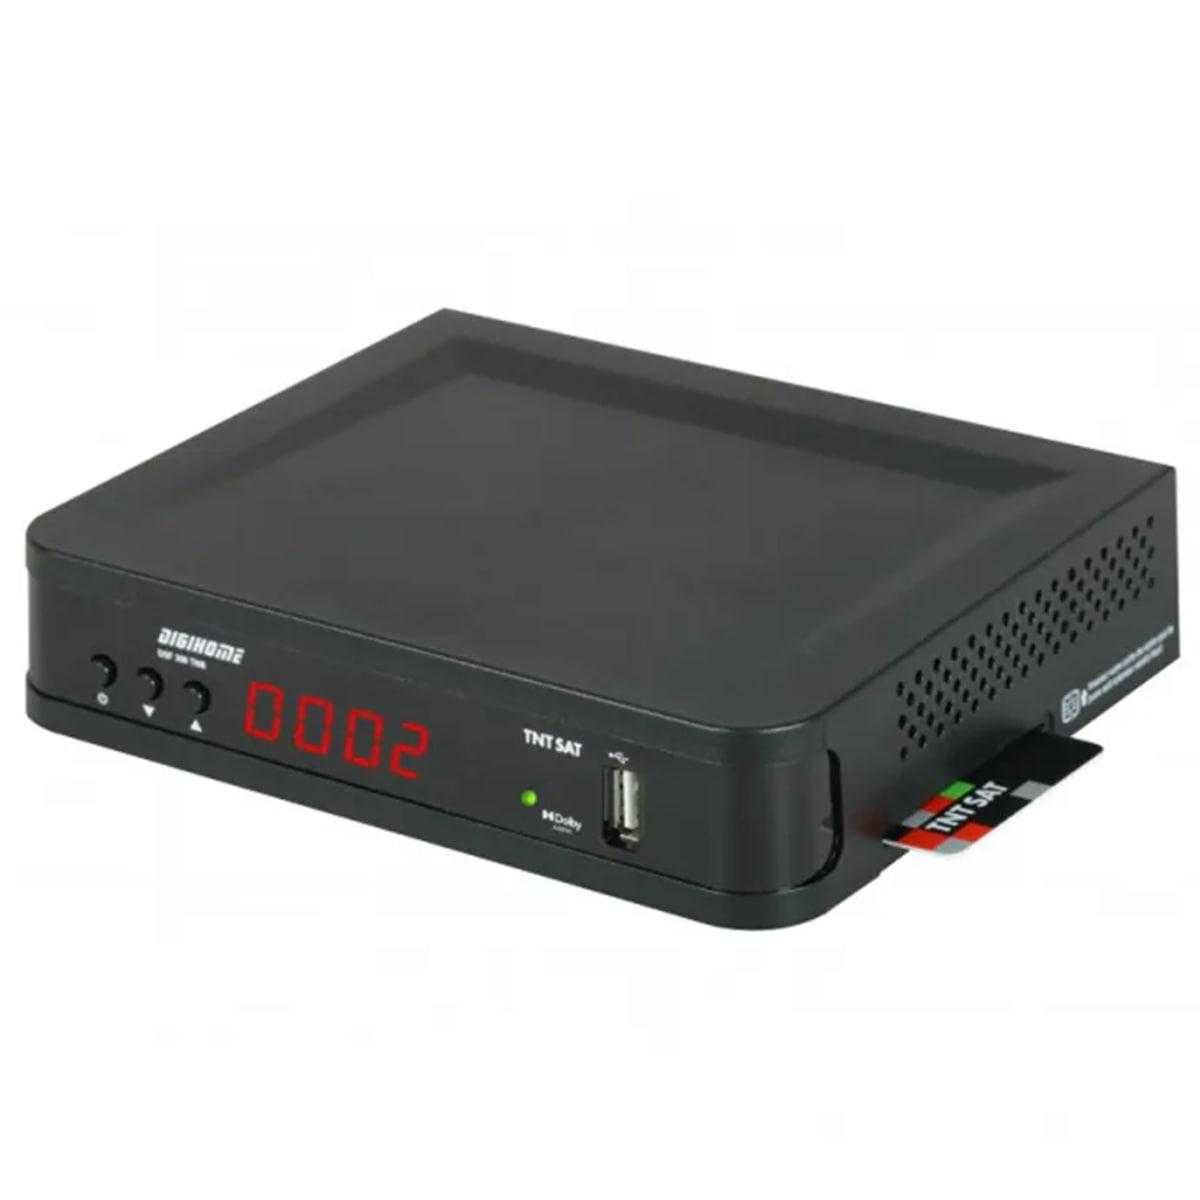 Digihome DSF 300 TNT HD Sat-Receiver mit TNTSAT PC6 Karte (DVB-S2 HDMI USB 3D Dolby Digital) von Digihome